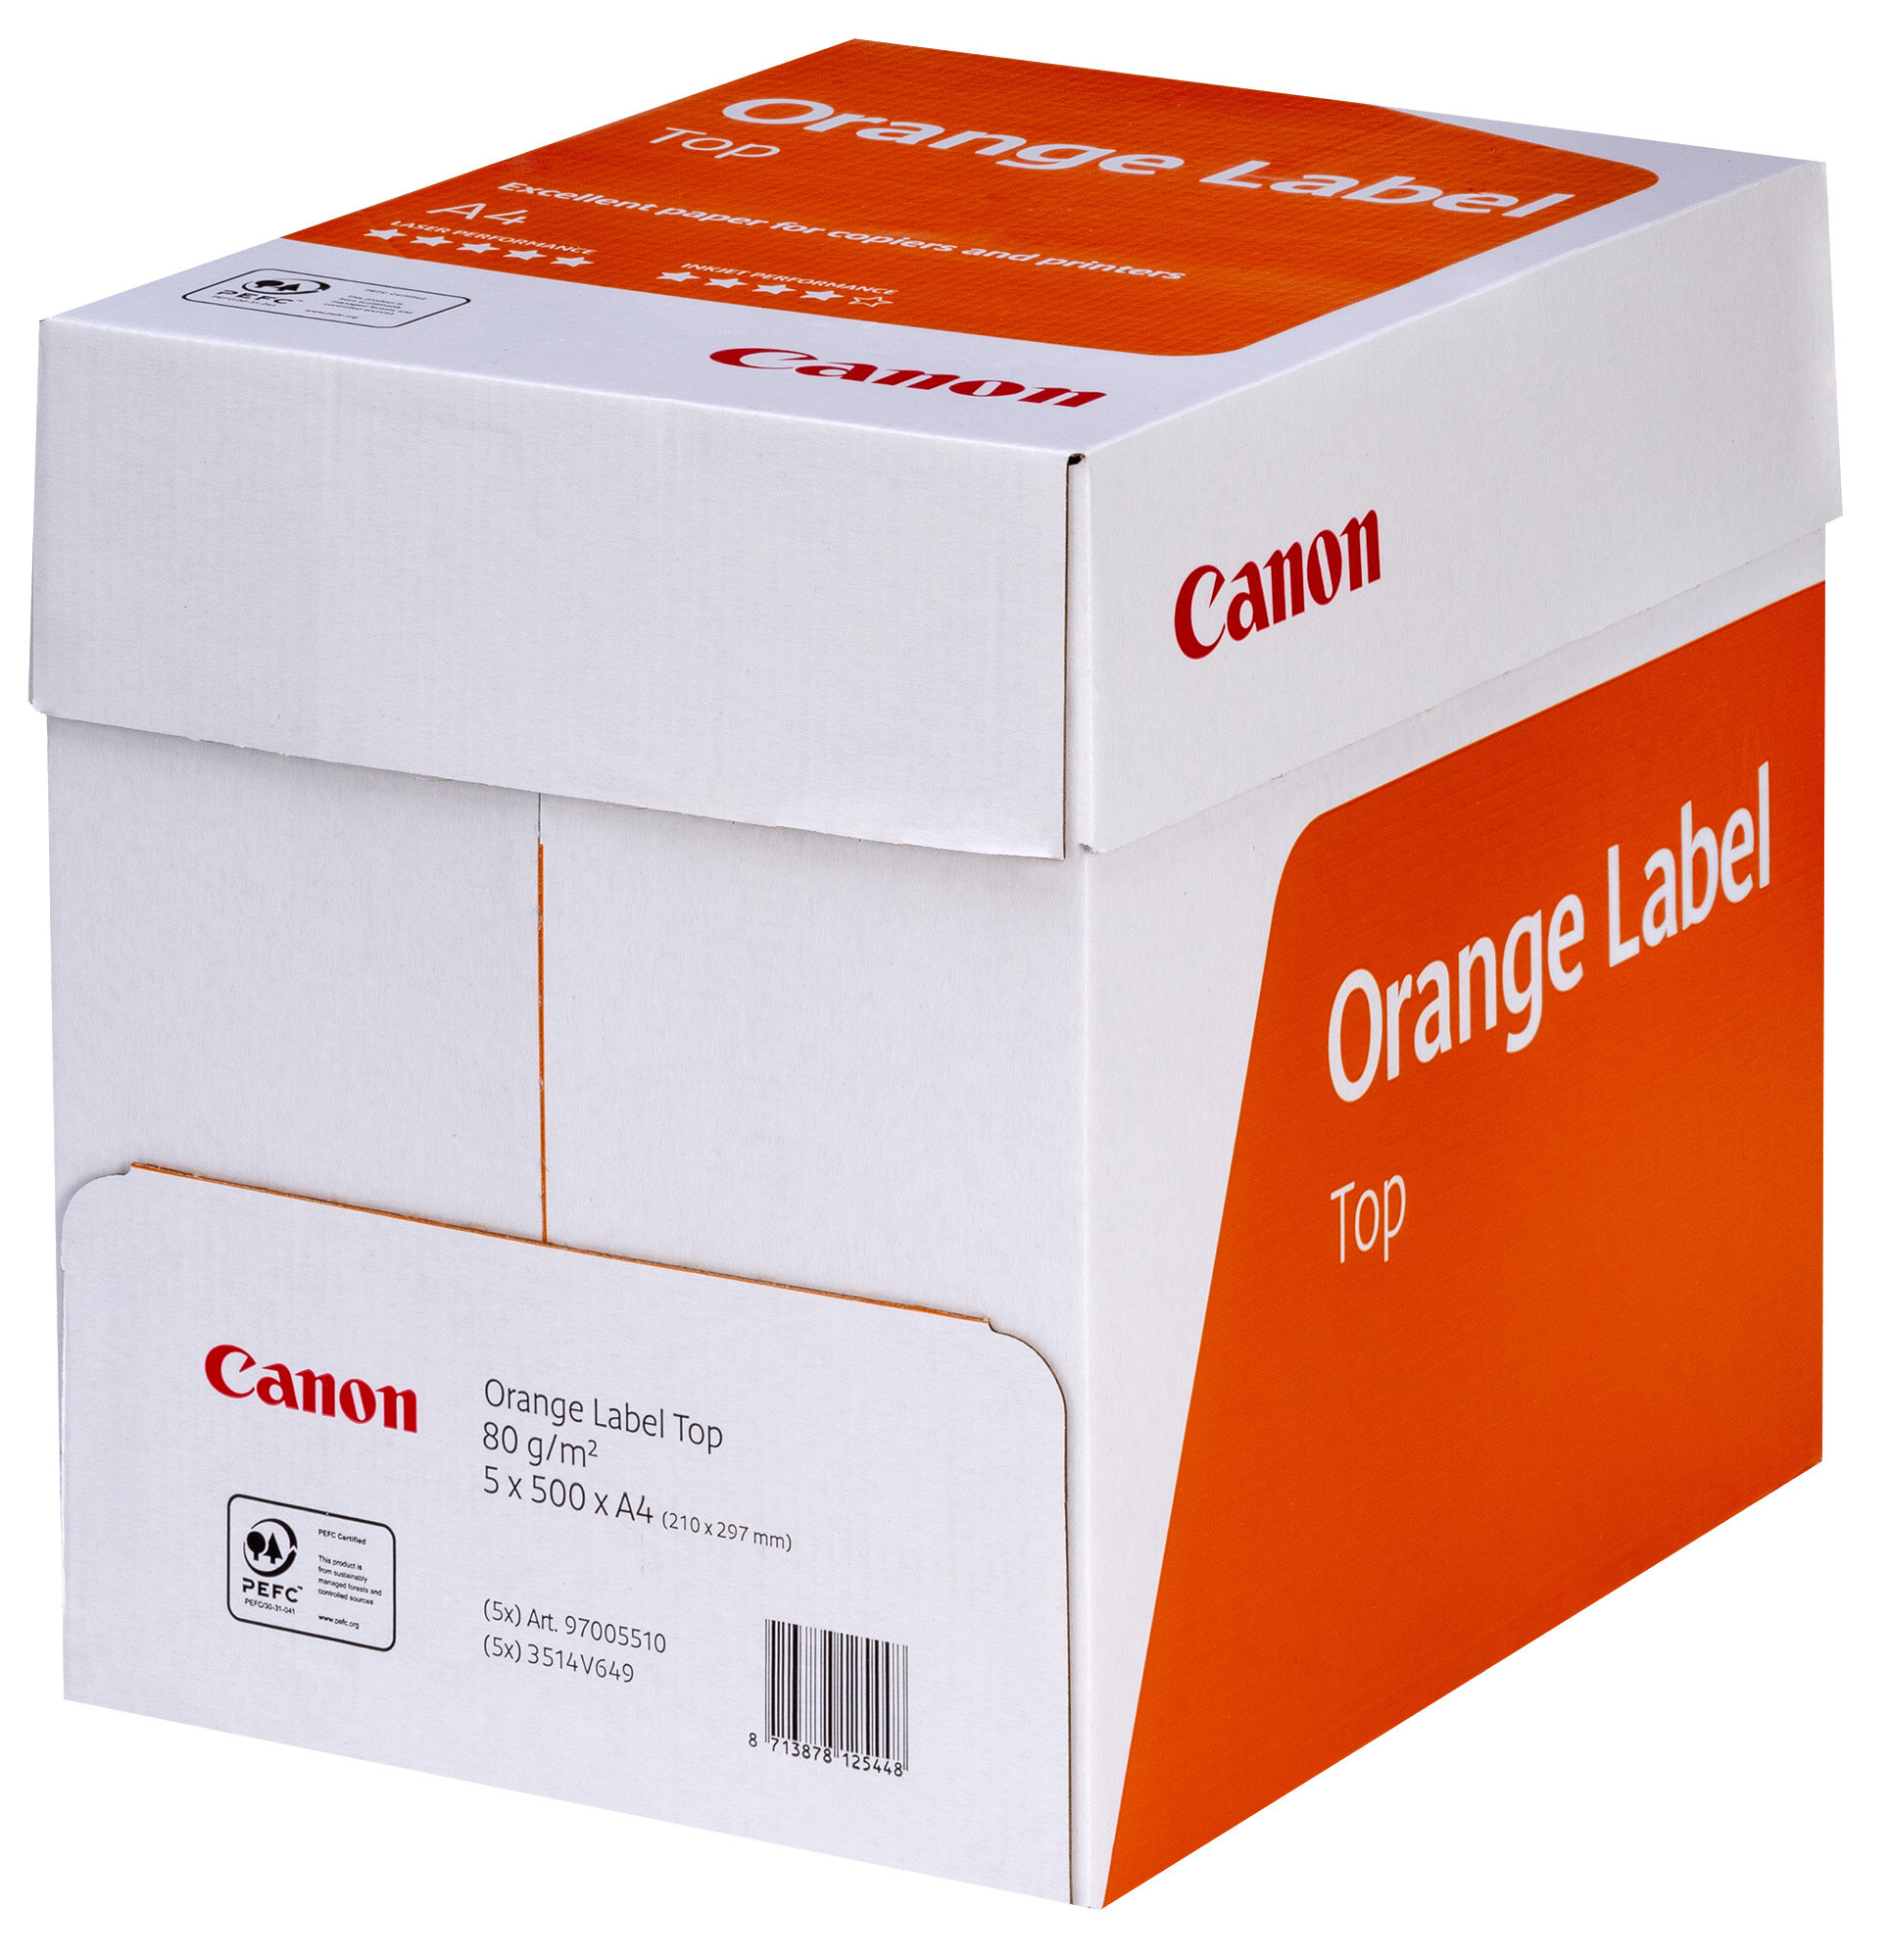 CANON Orange Label A4 500 arkuszy Papier do drukarki - niskie ceny i opinie  w Media Expert